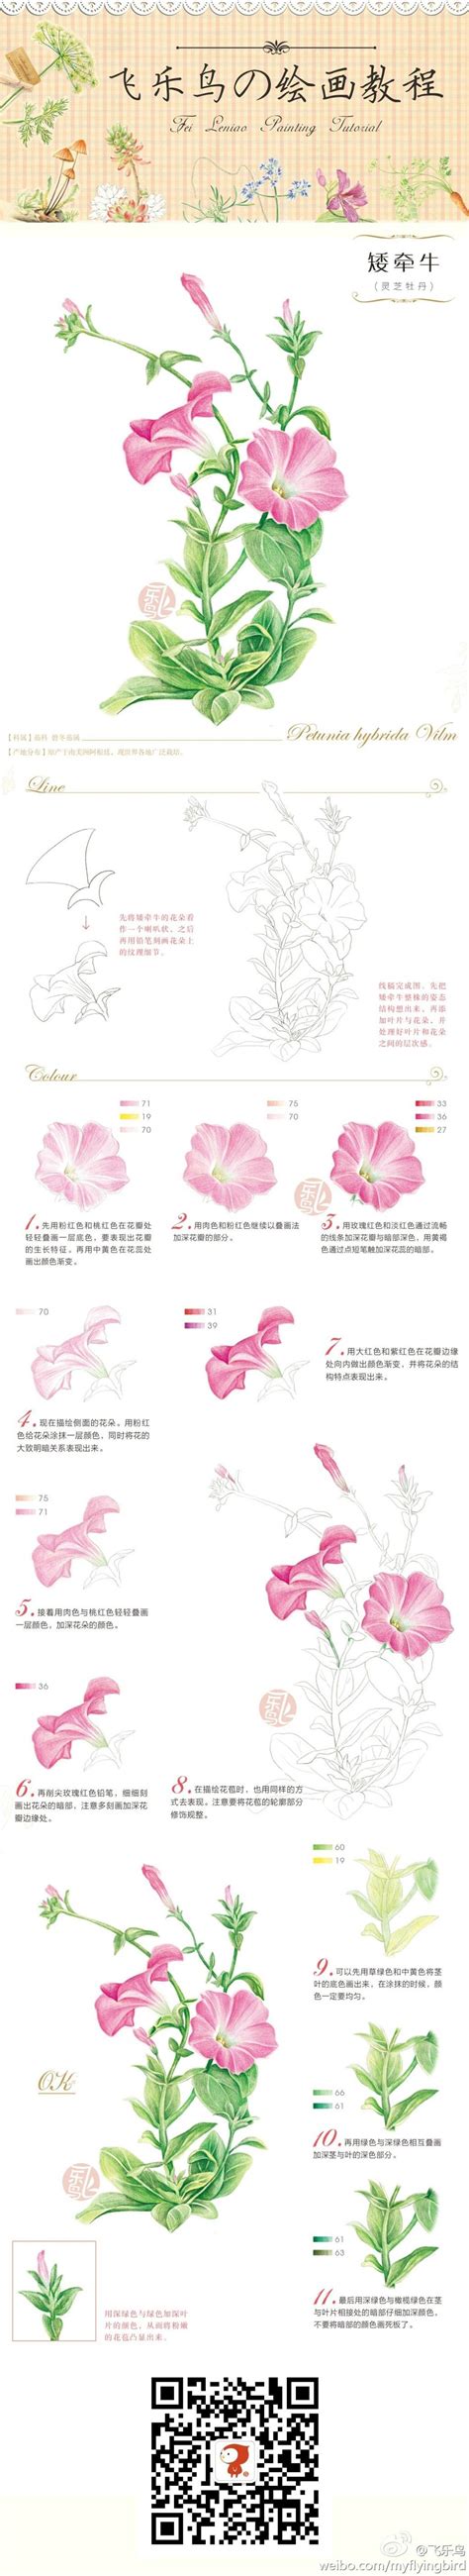 Duitang.com - 飞乐鸟. | 꽃 그리는 법, 수채화, 수채화 꽃